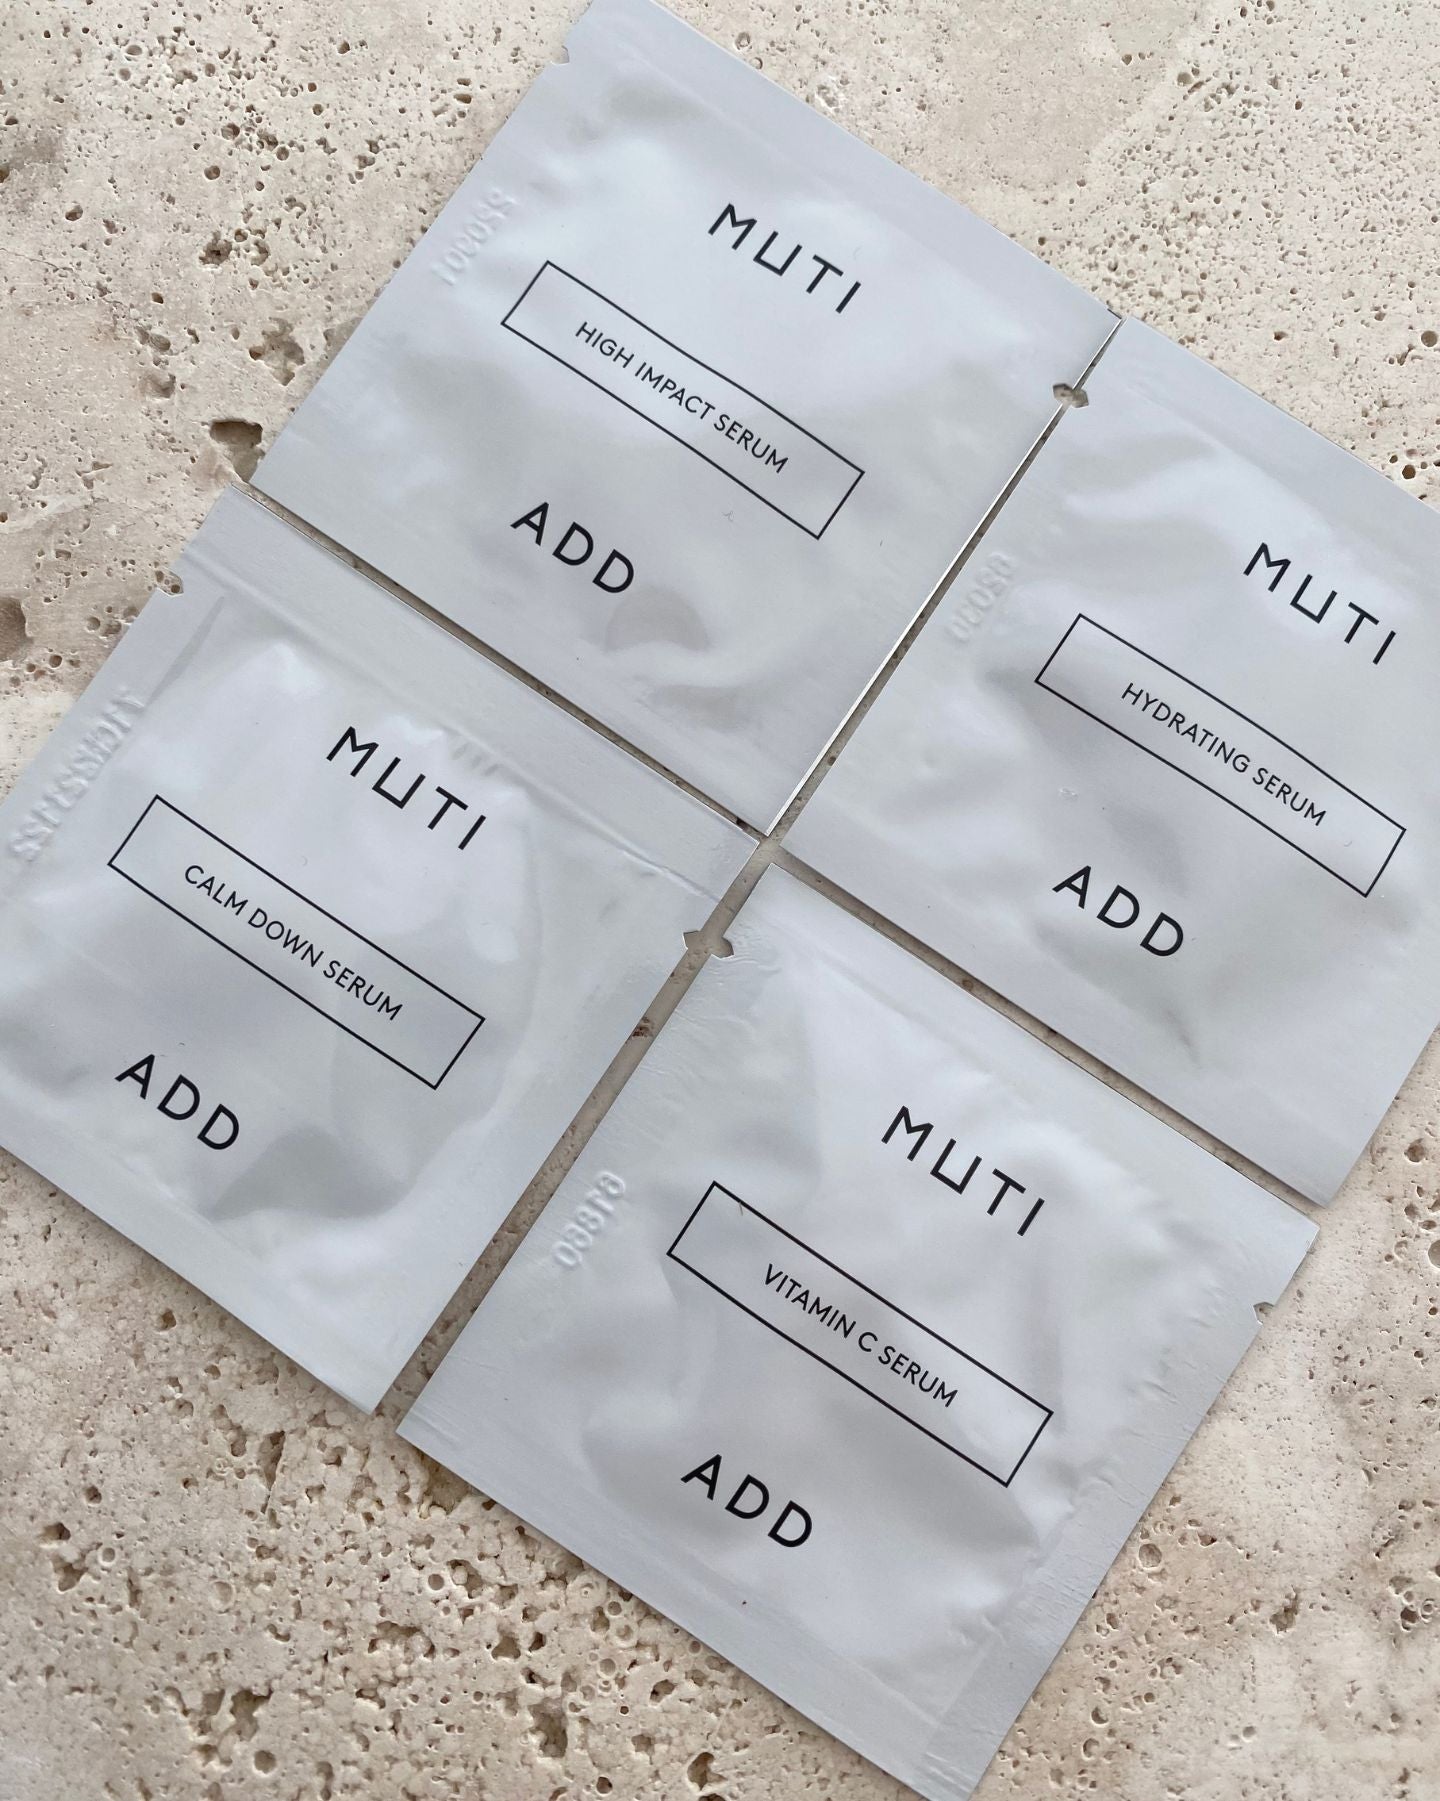 MUTI serum trial kit samples